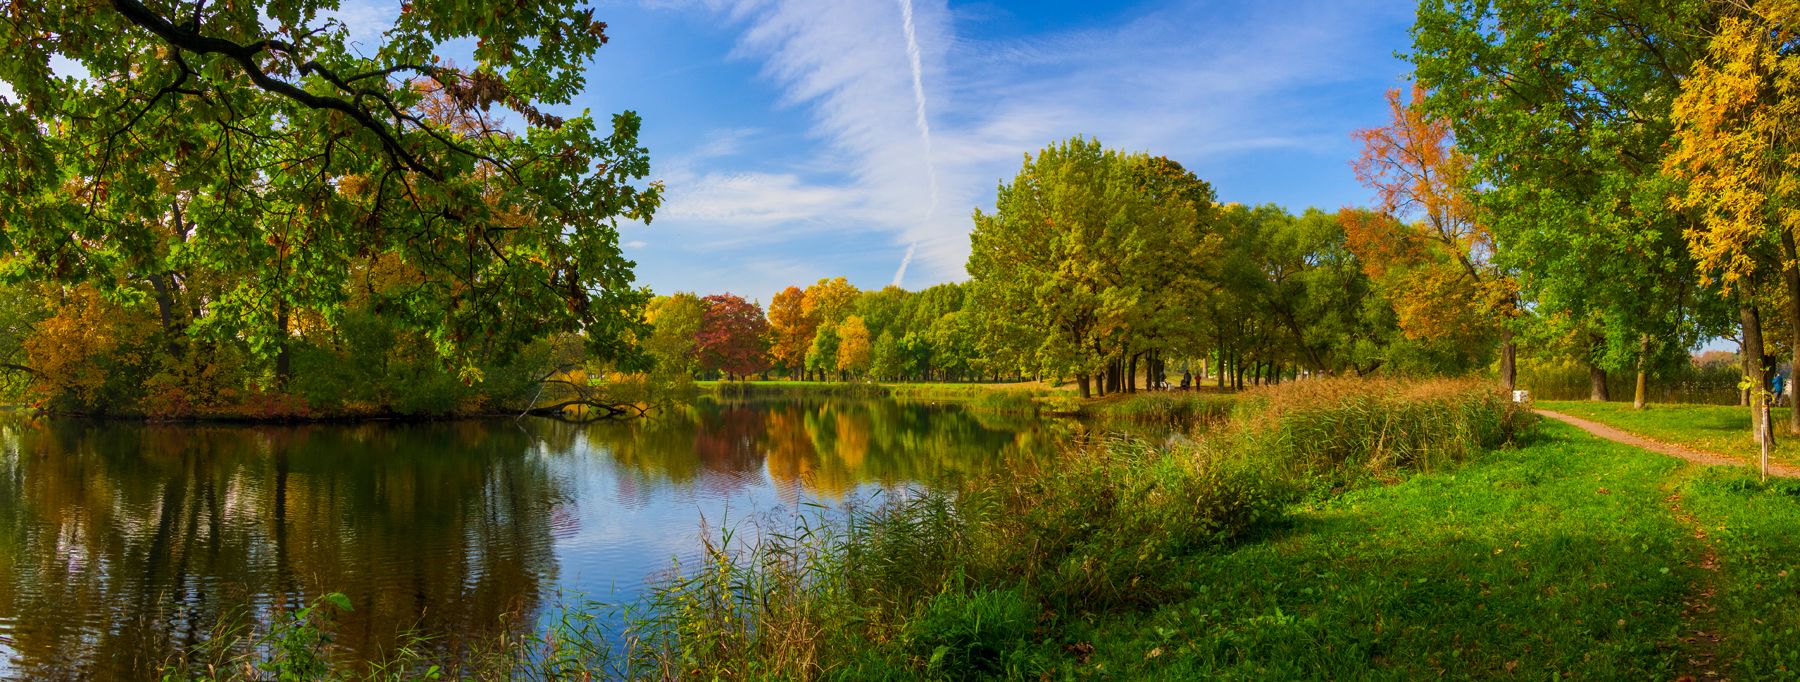 осень, пейзаж, природа, листва, цветная, яркая, озеро, деревья, красиво, петергоф, Игорь Парсаданов